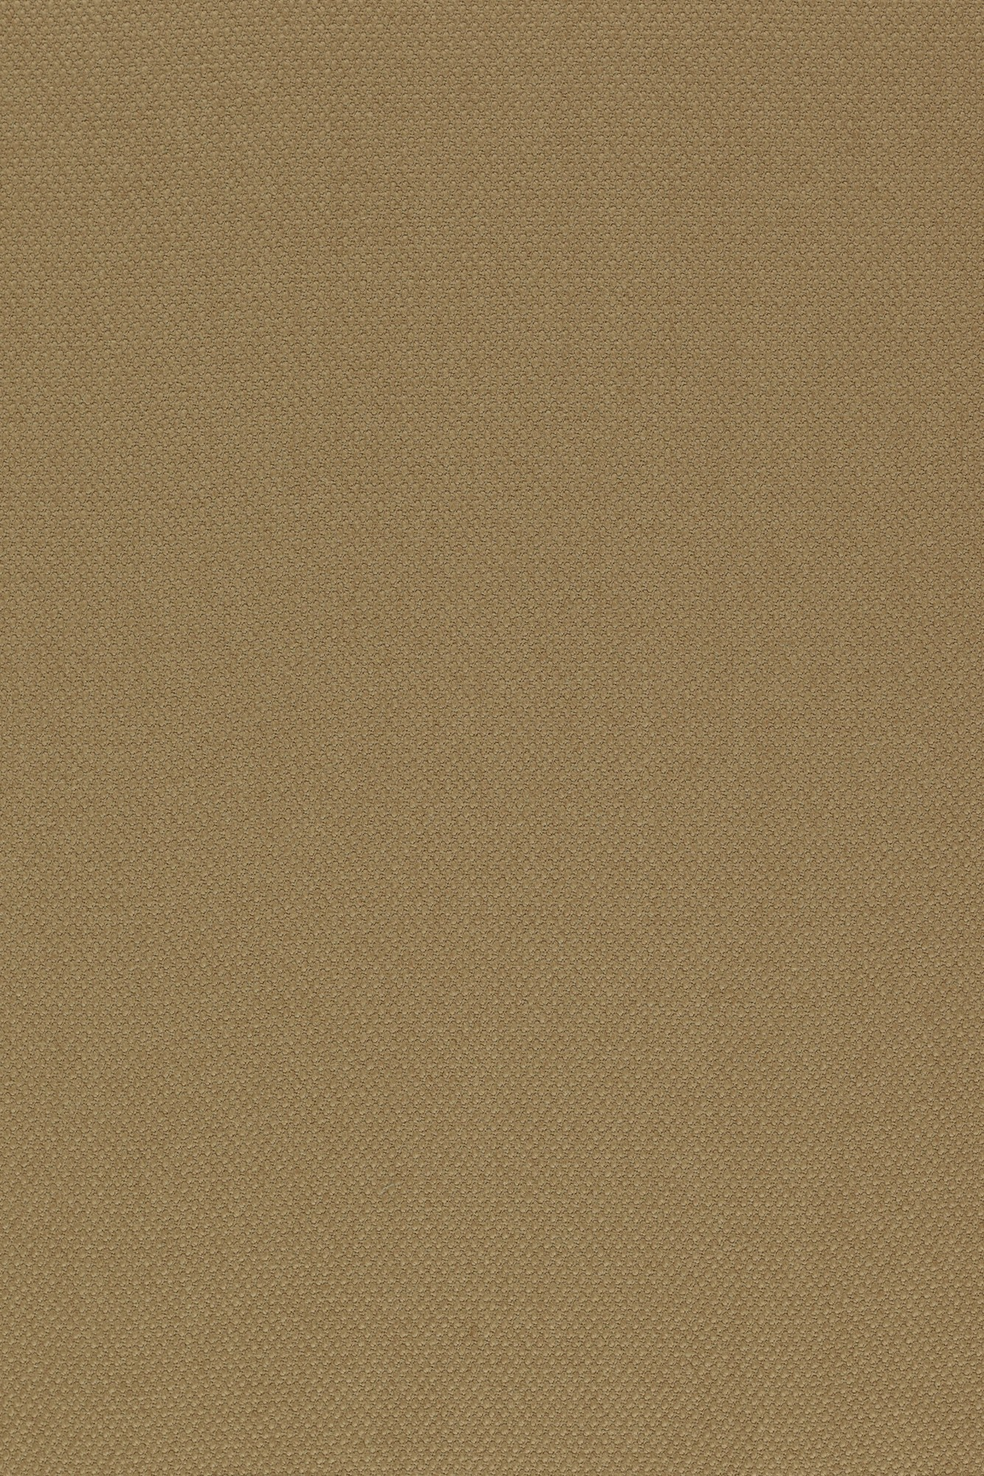 Fabric sample Steelcut 2 255 brown